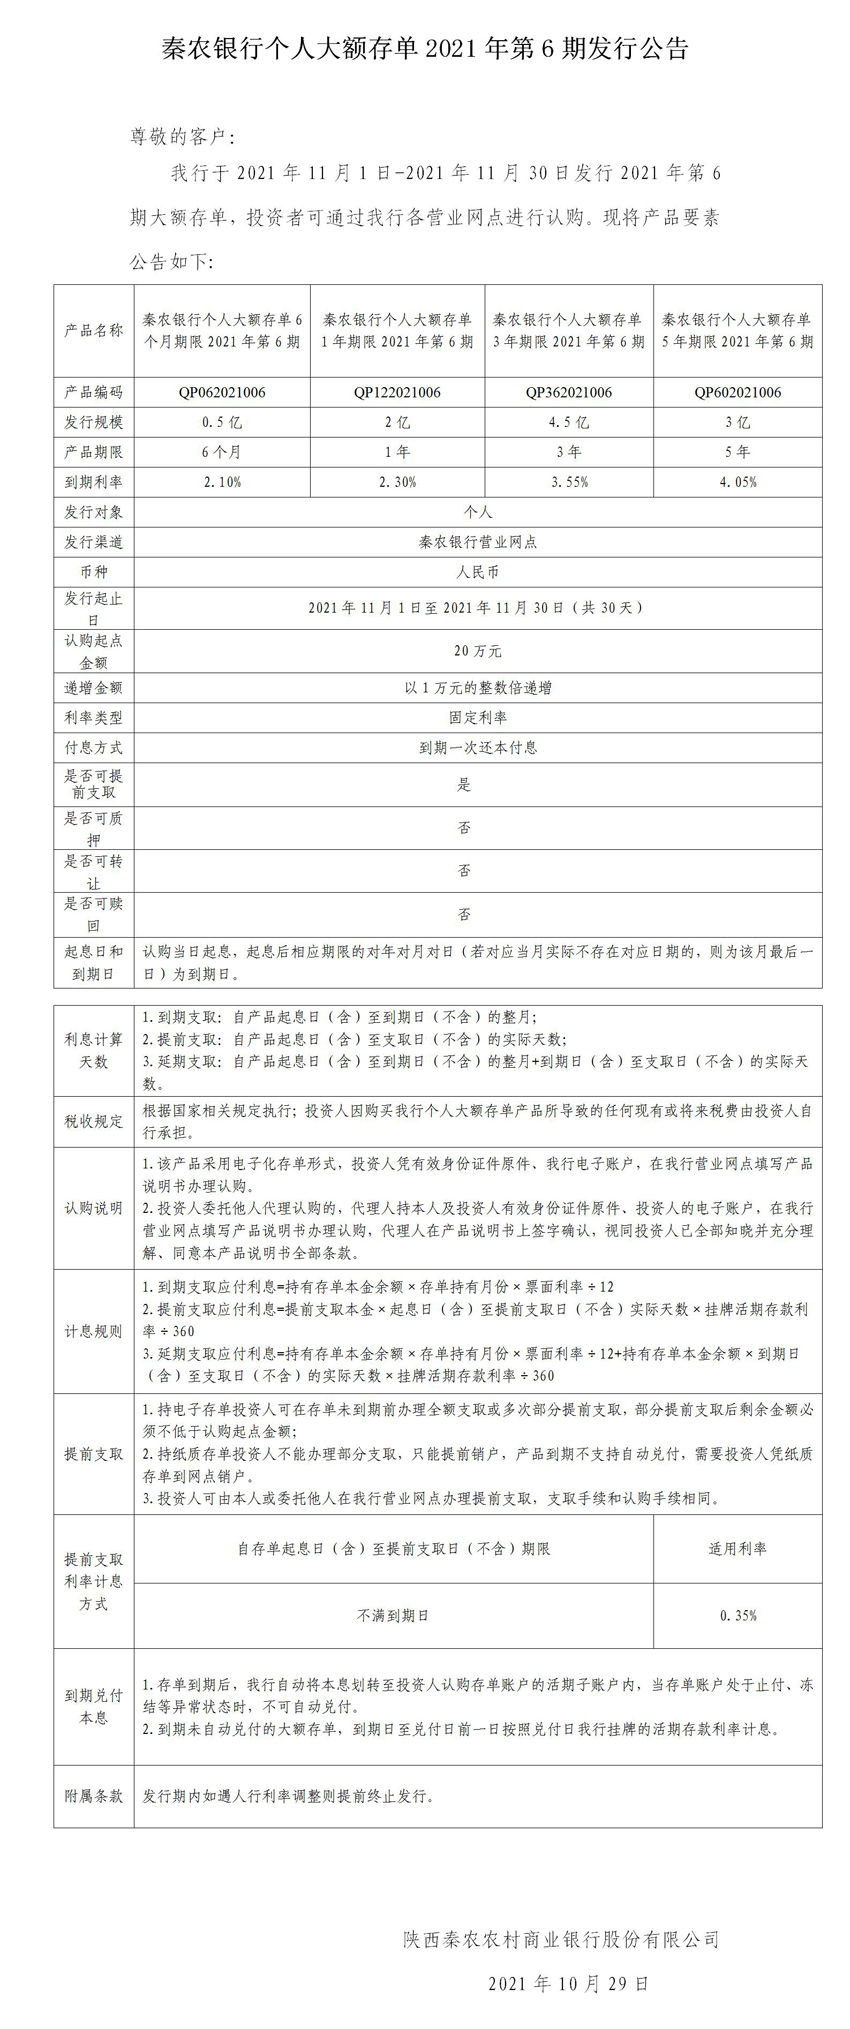 秦农银行个人大额存单2021年第6期发行公告_01(1).jpg